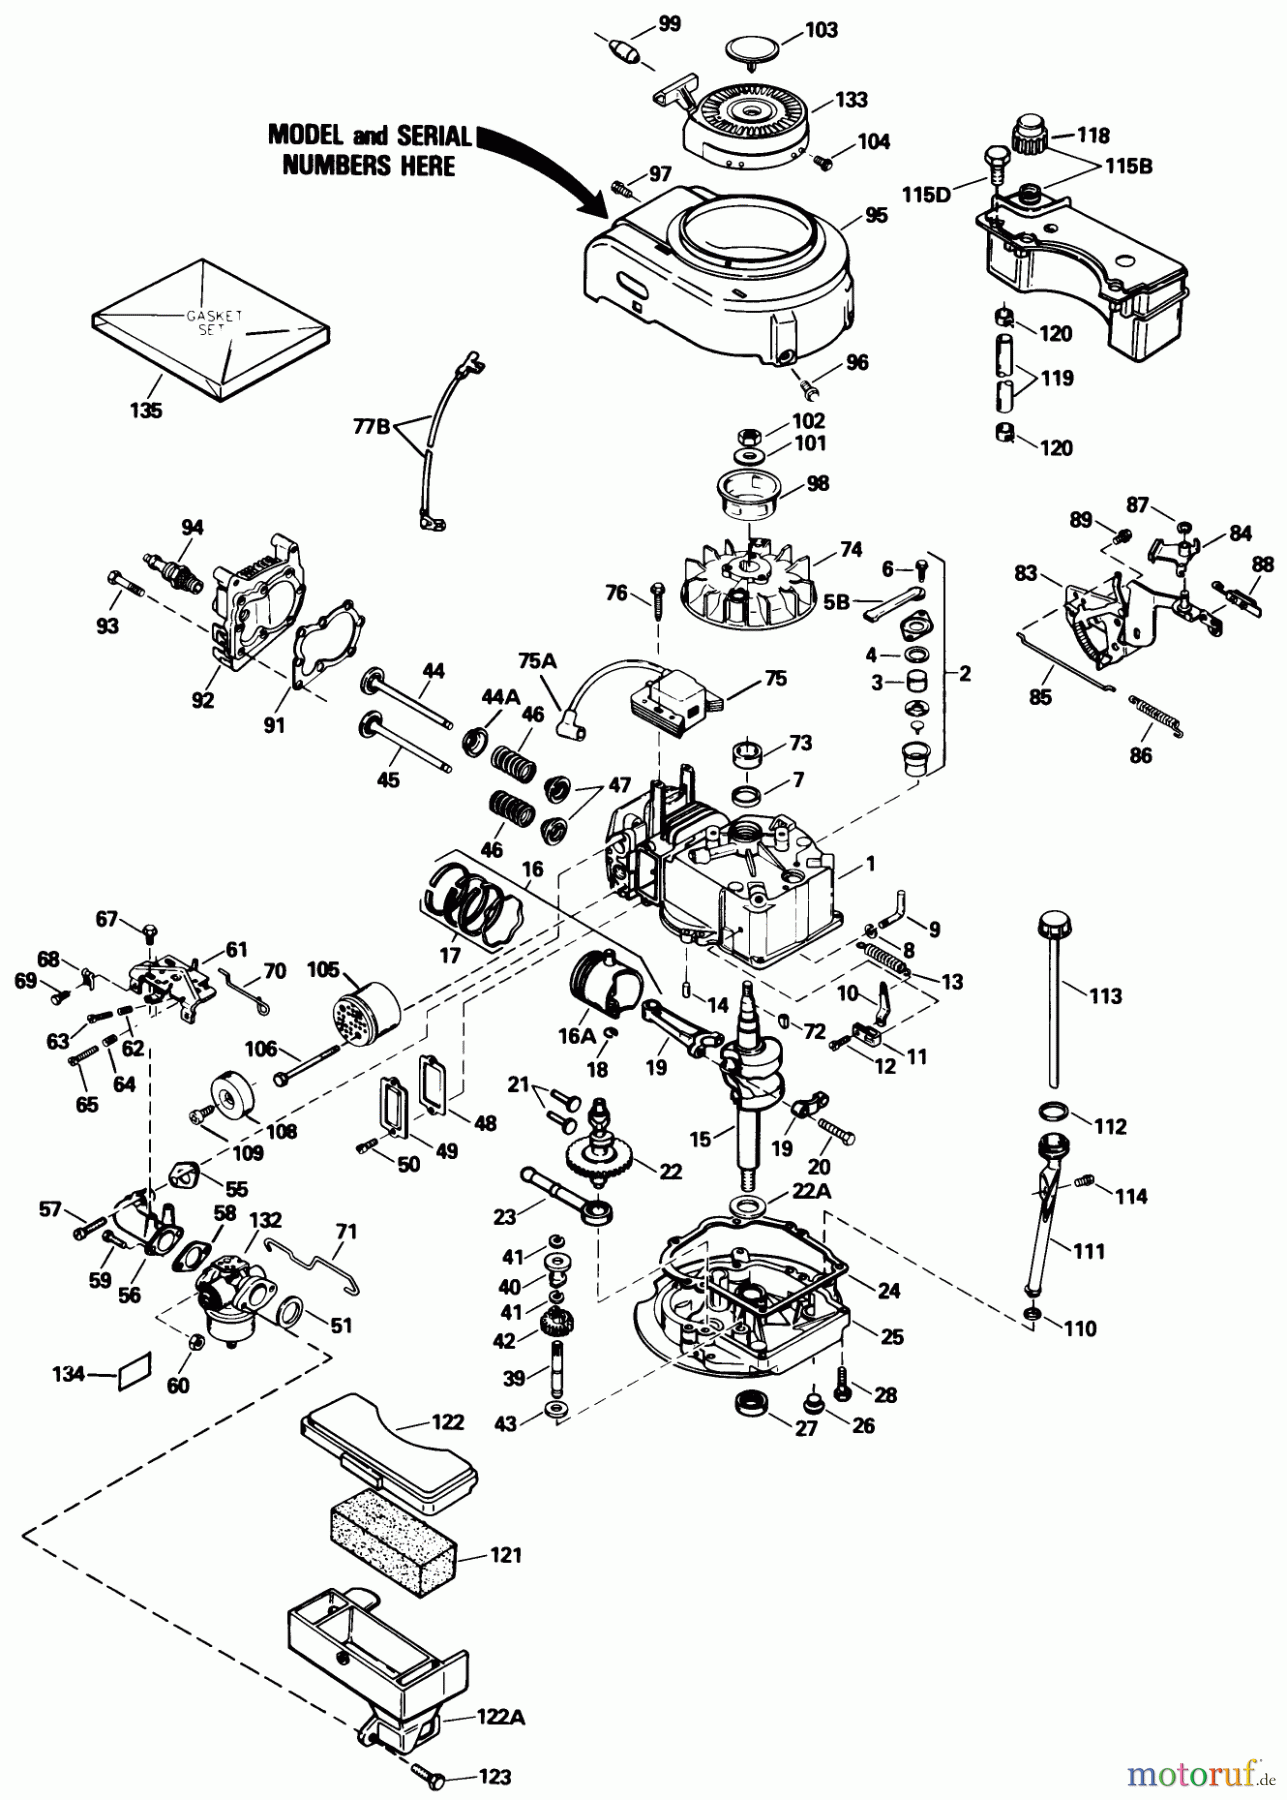  Toro Neu Mowers, Walk-Behind Seite 1 20586 - Toro Lawnmower, 1989 (9000001-9999999) ENGINE TECUMSEH MODEL NO. TVS100-44016B